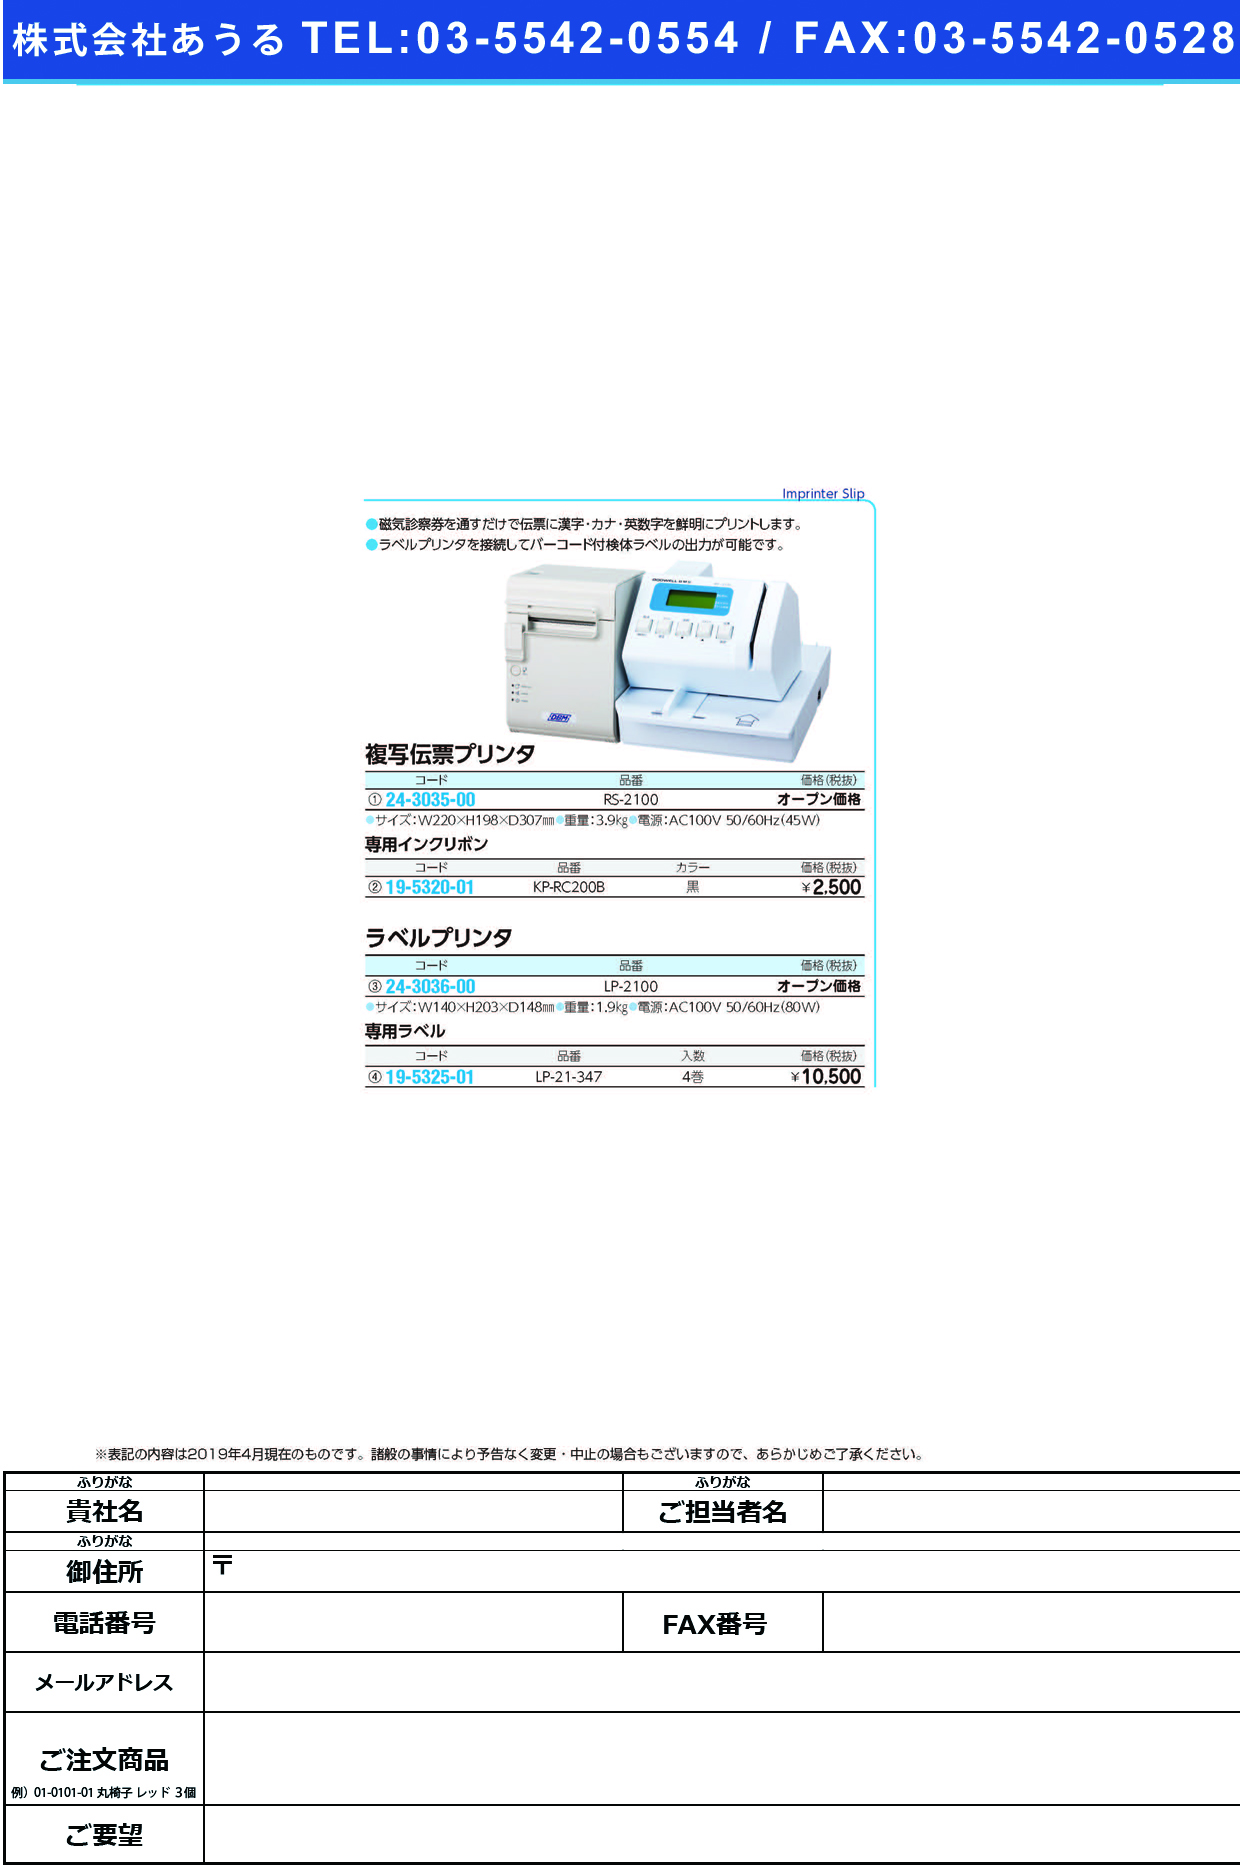 (24-3035-00)複写伝票プリンタ RS-2100 ﾌｸｼｬﾃﾞﾝﾋﾟｮｳﾌﾟﾘﾝﾀ【1式単位】【2019年カタログ商品】